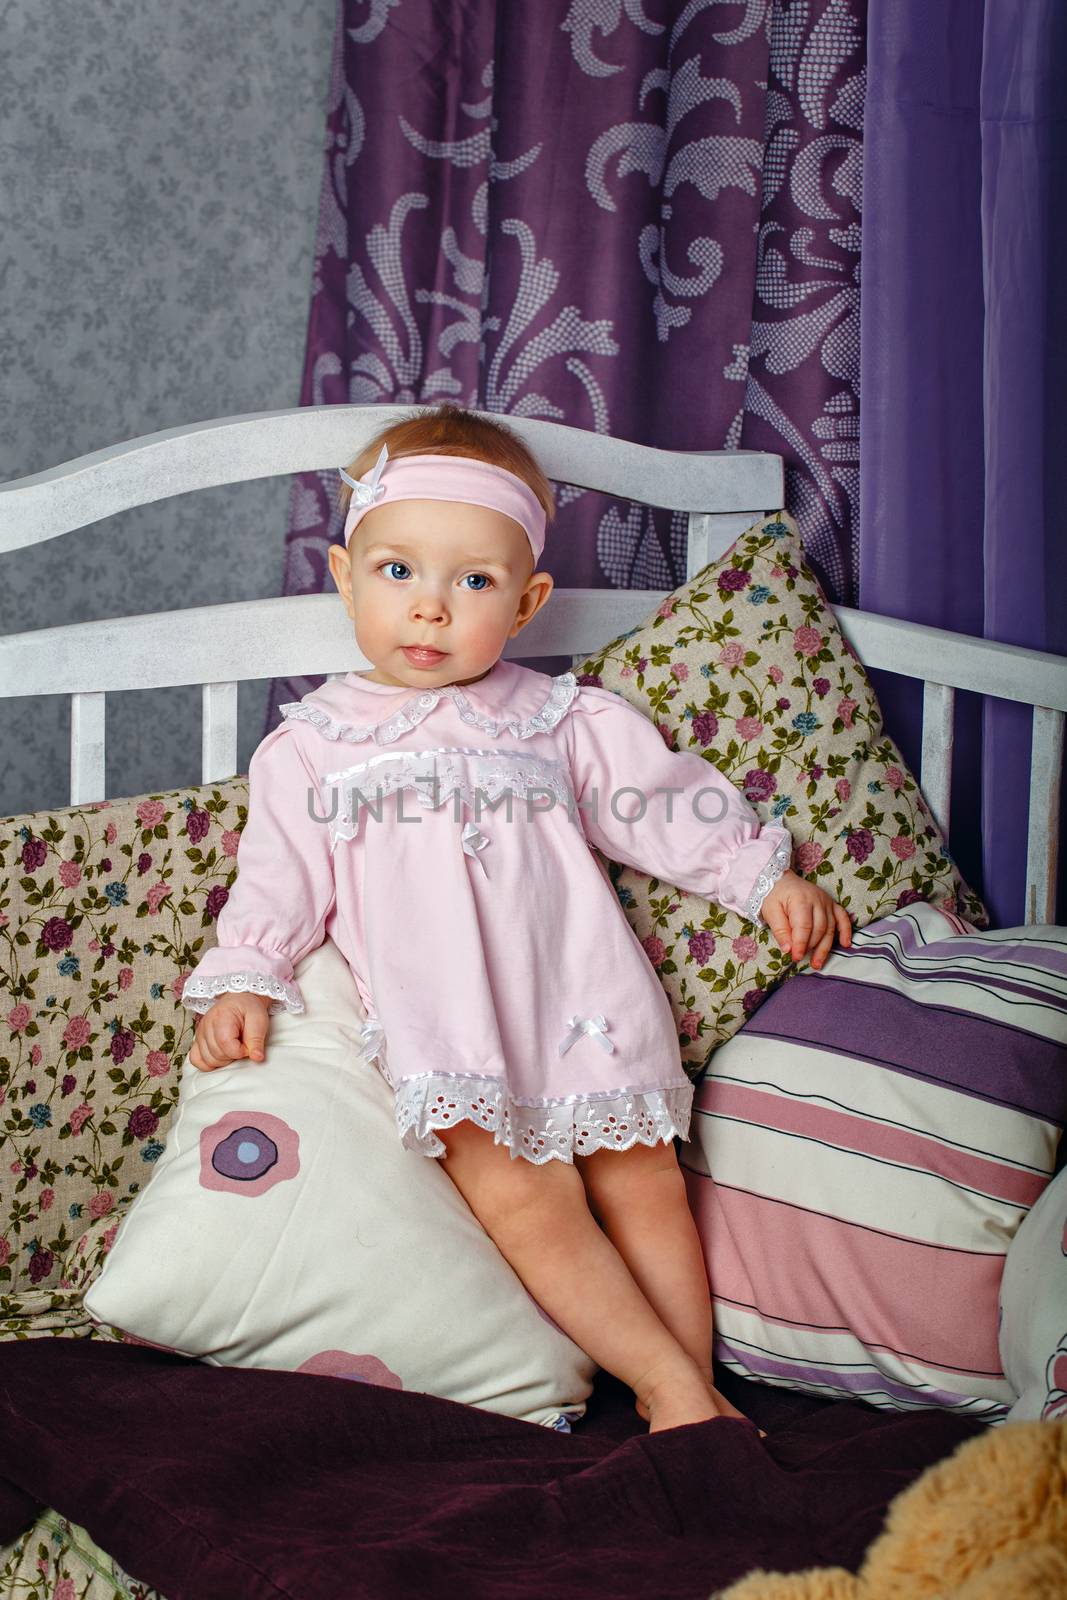 Little girl in nursery by Vagengeym